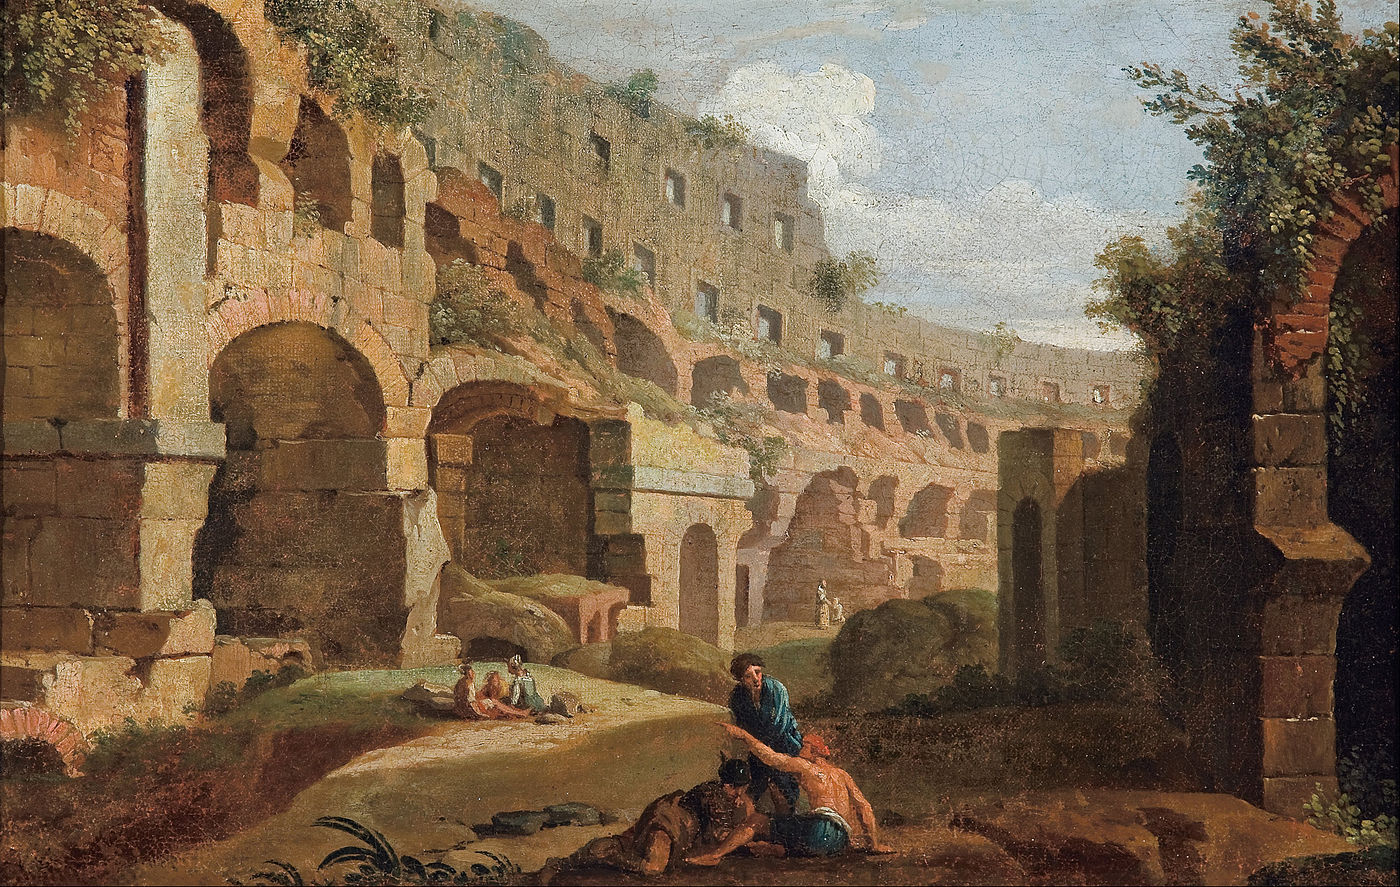 Caprice - intérieur du Colisée